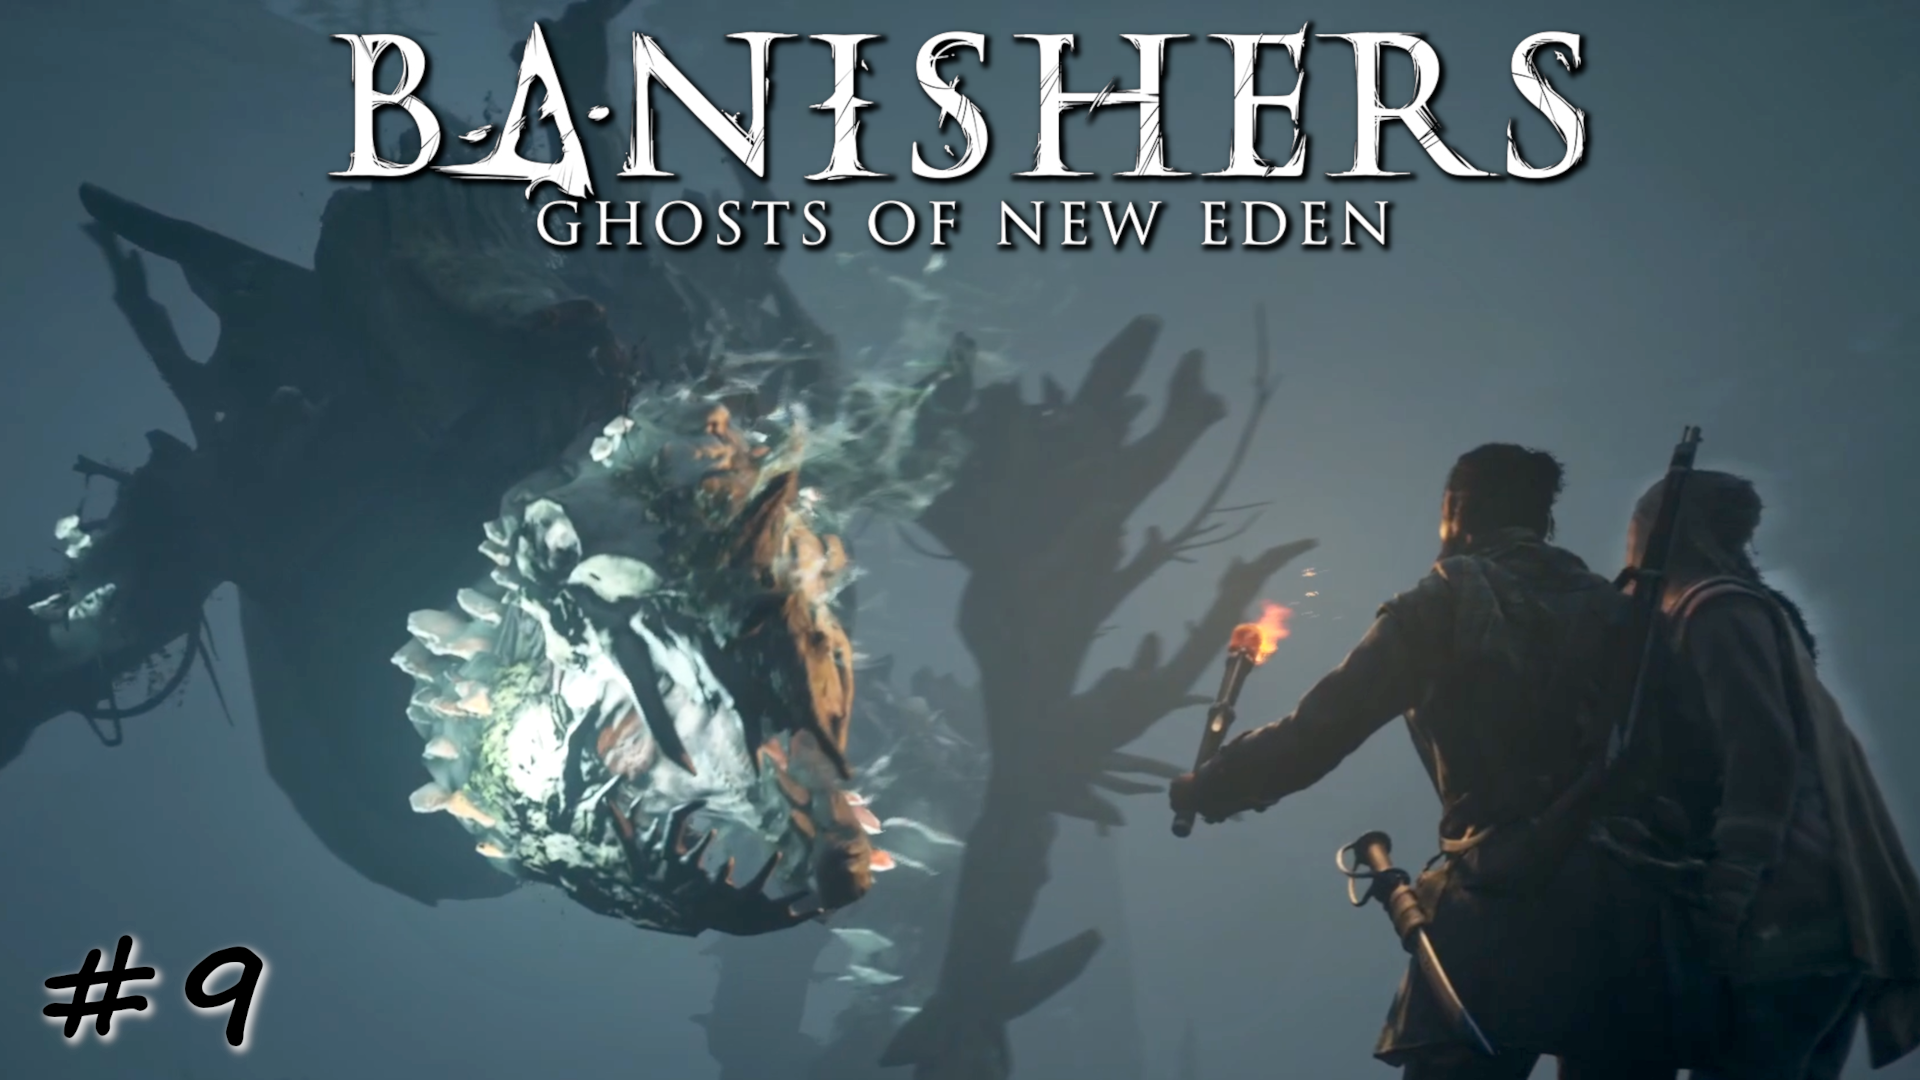 Зверь найден, дело о его появлении раскрыто - #9 - Banishers Ghosts of New Eden